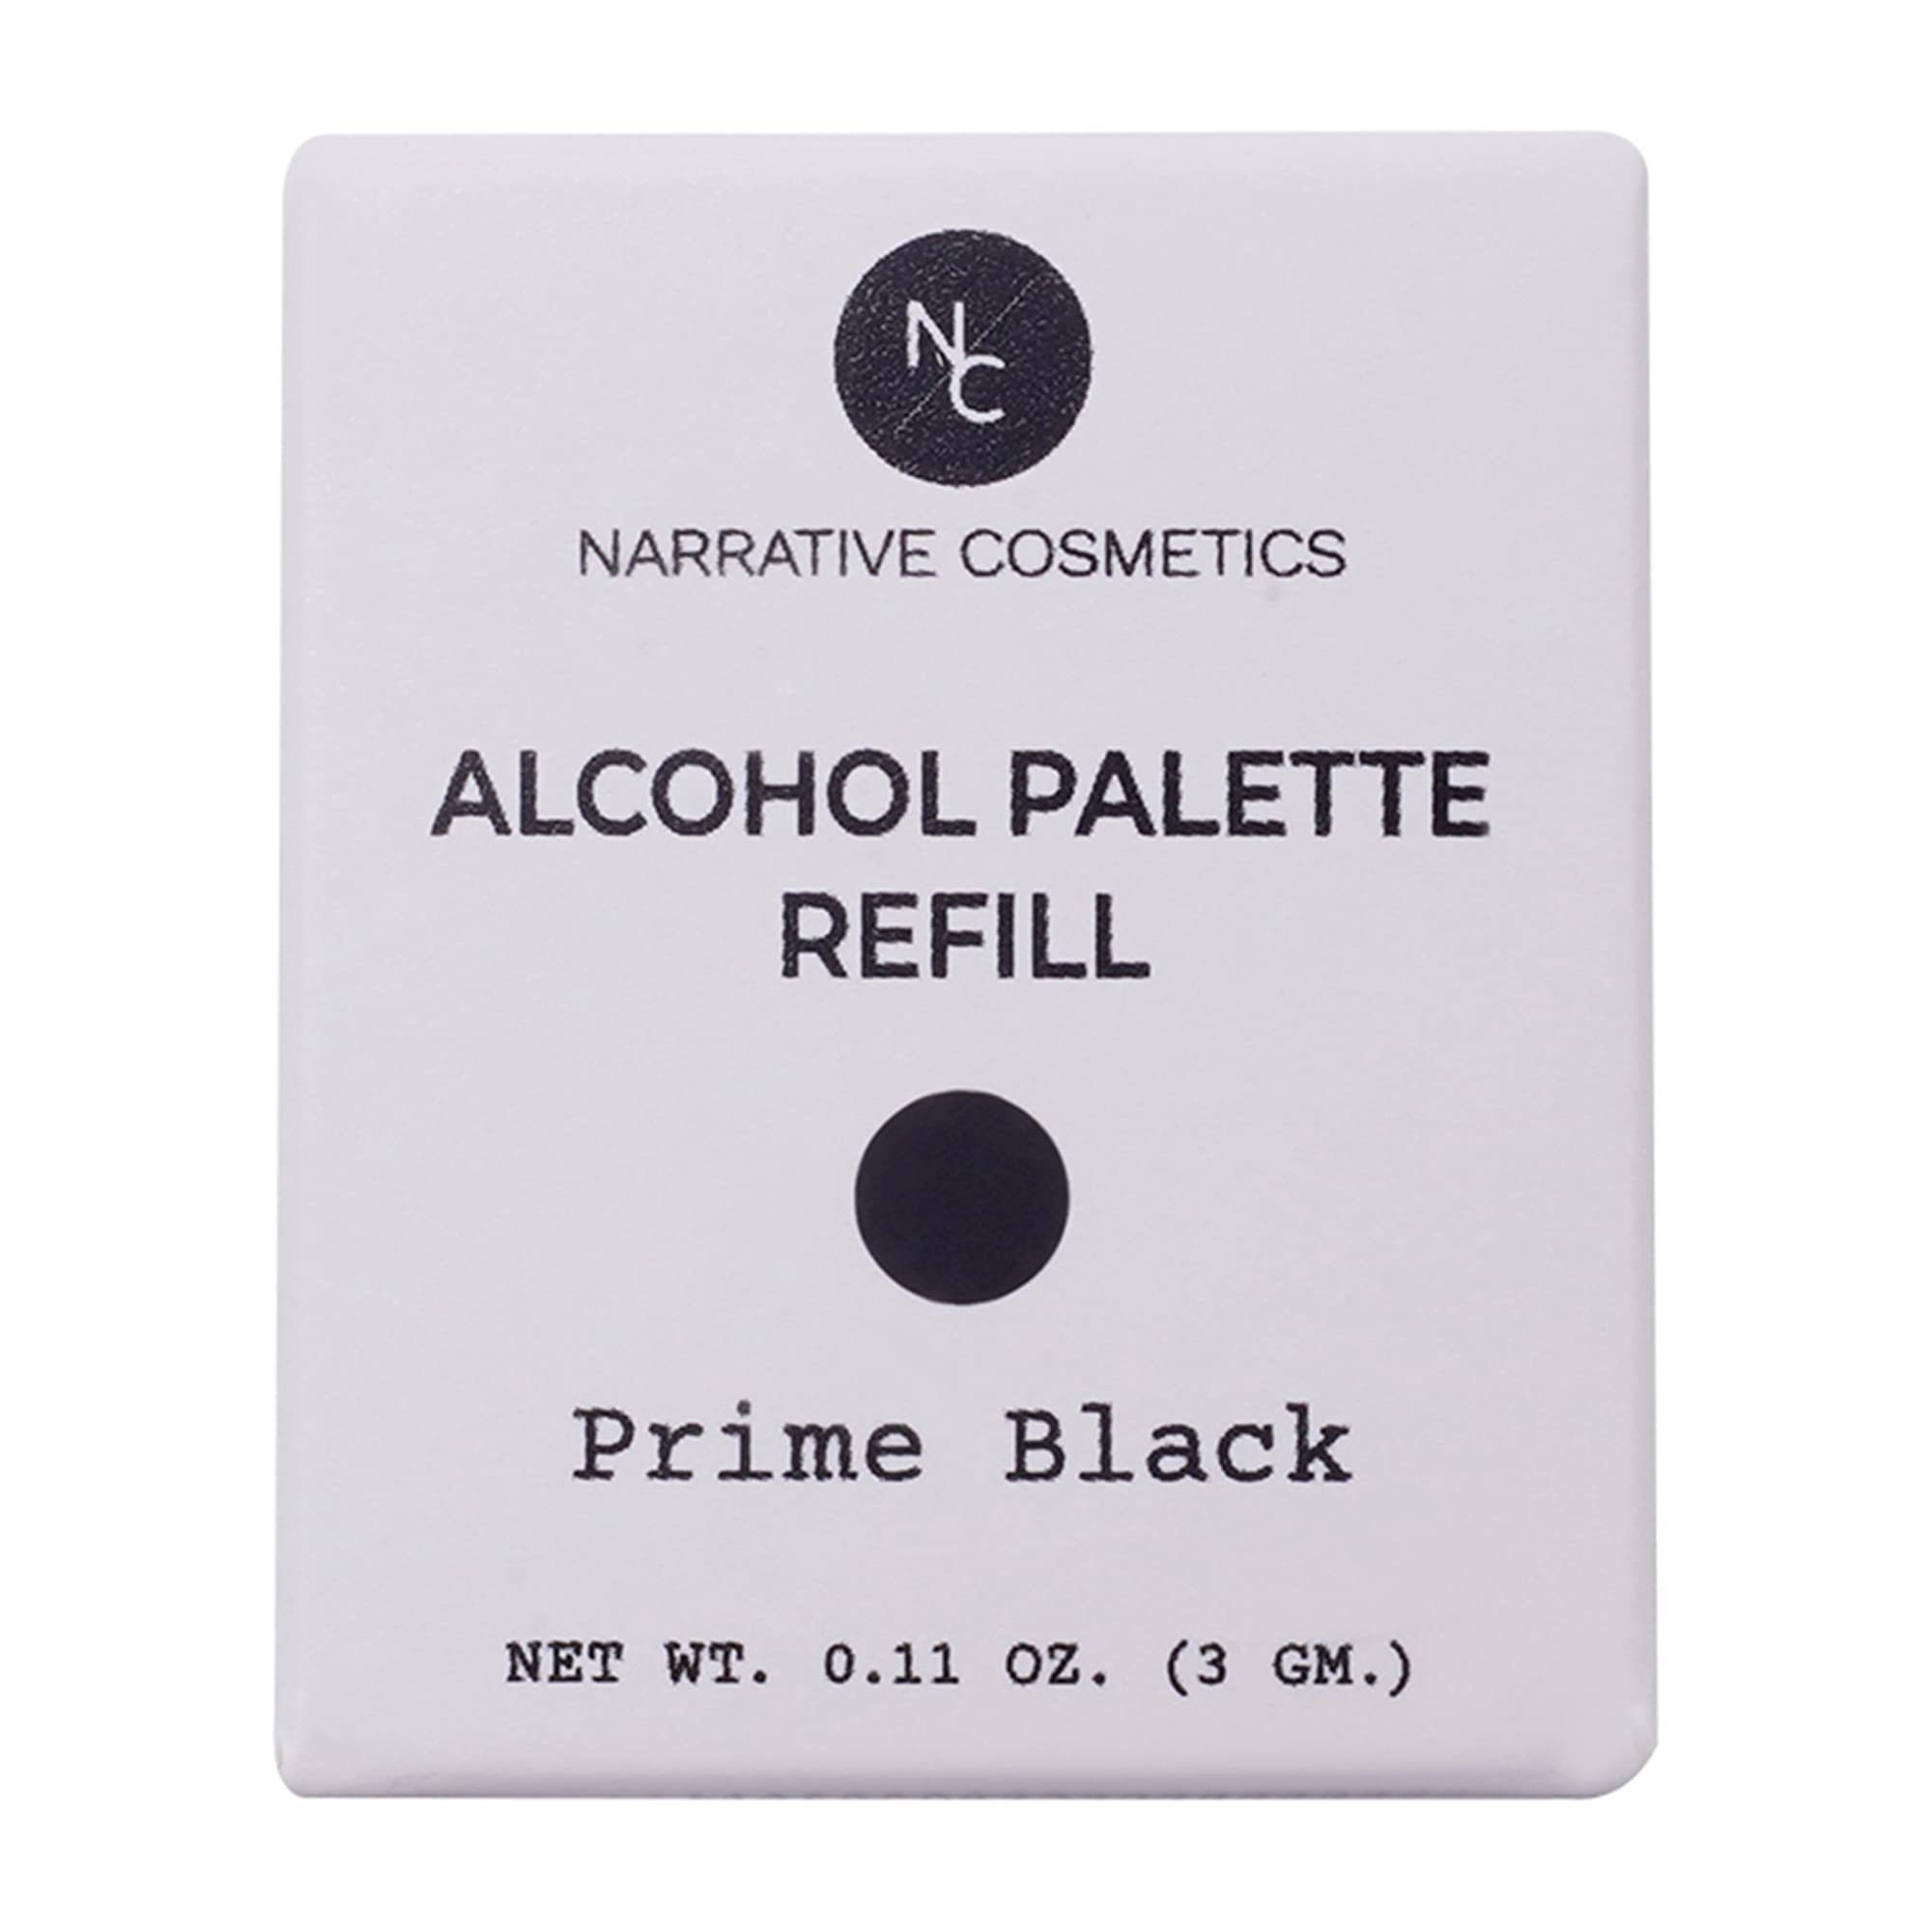 Narrative Cosmetics Alcohol Palette Refill Pans - FX Colors - Prime Black